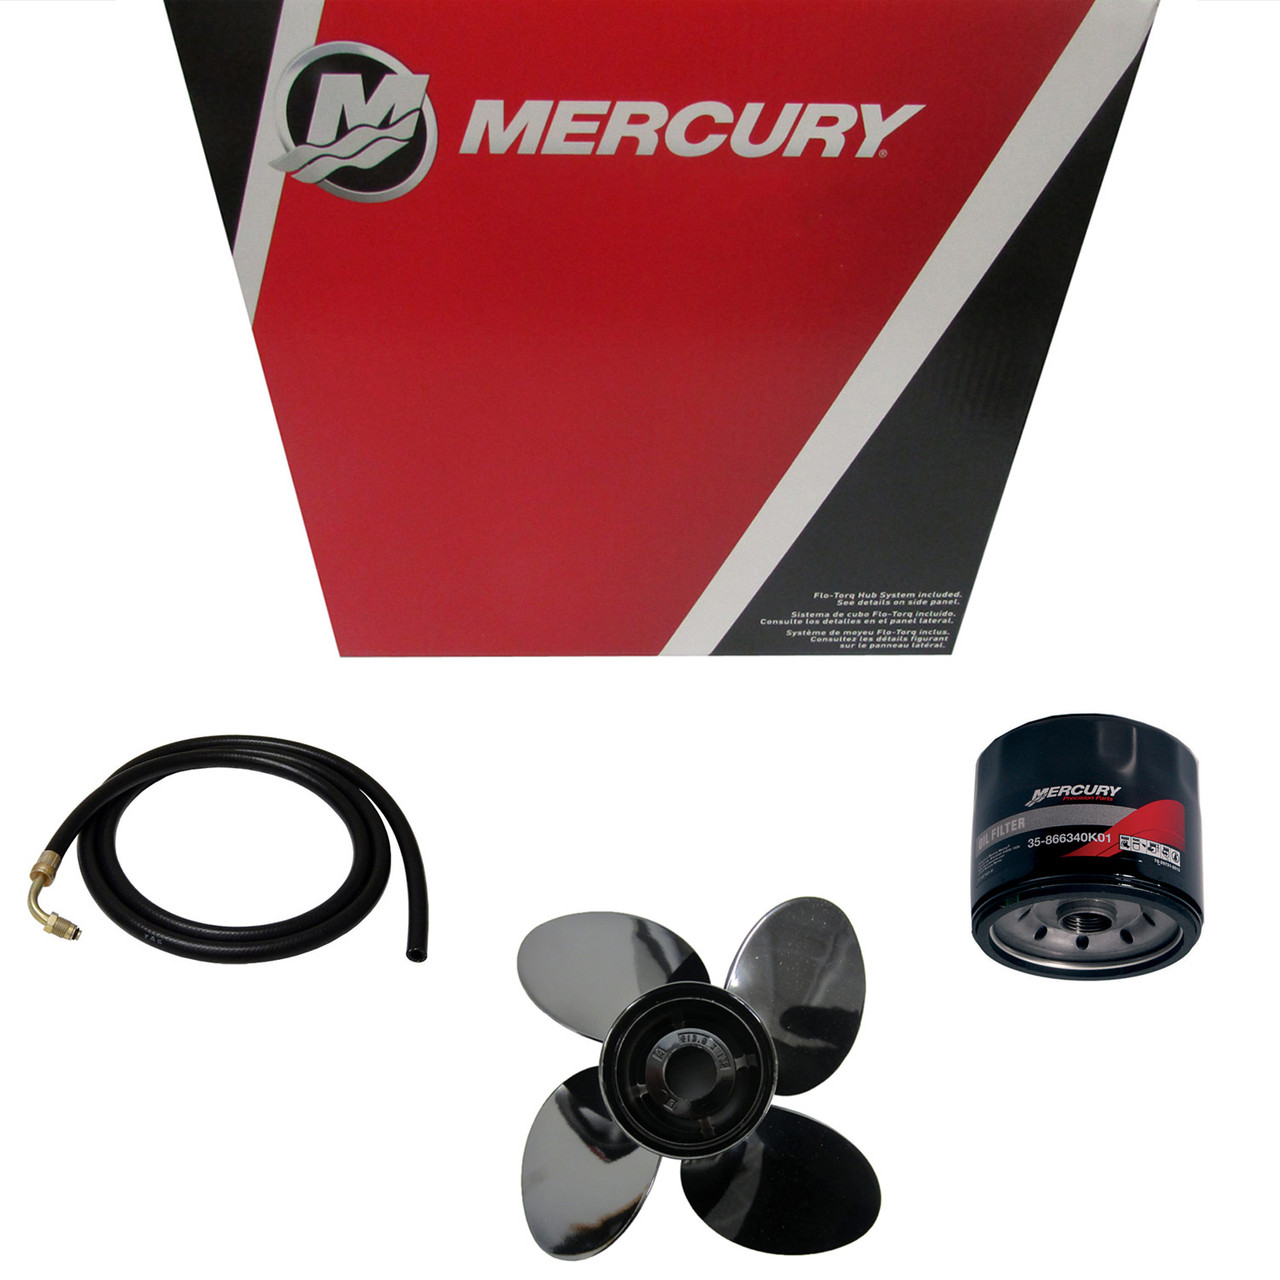 Mercury Marine / Mercruiser New OEM Driveshaft, 881943